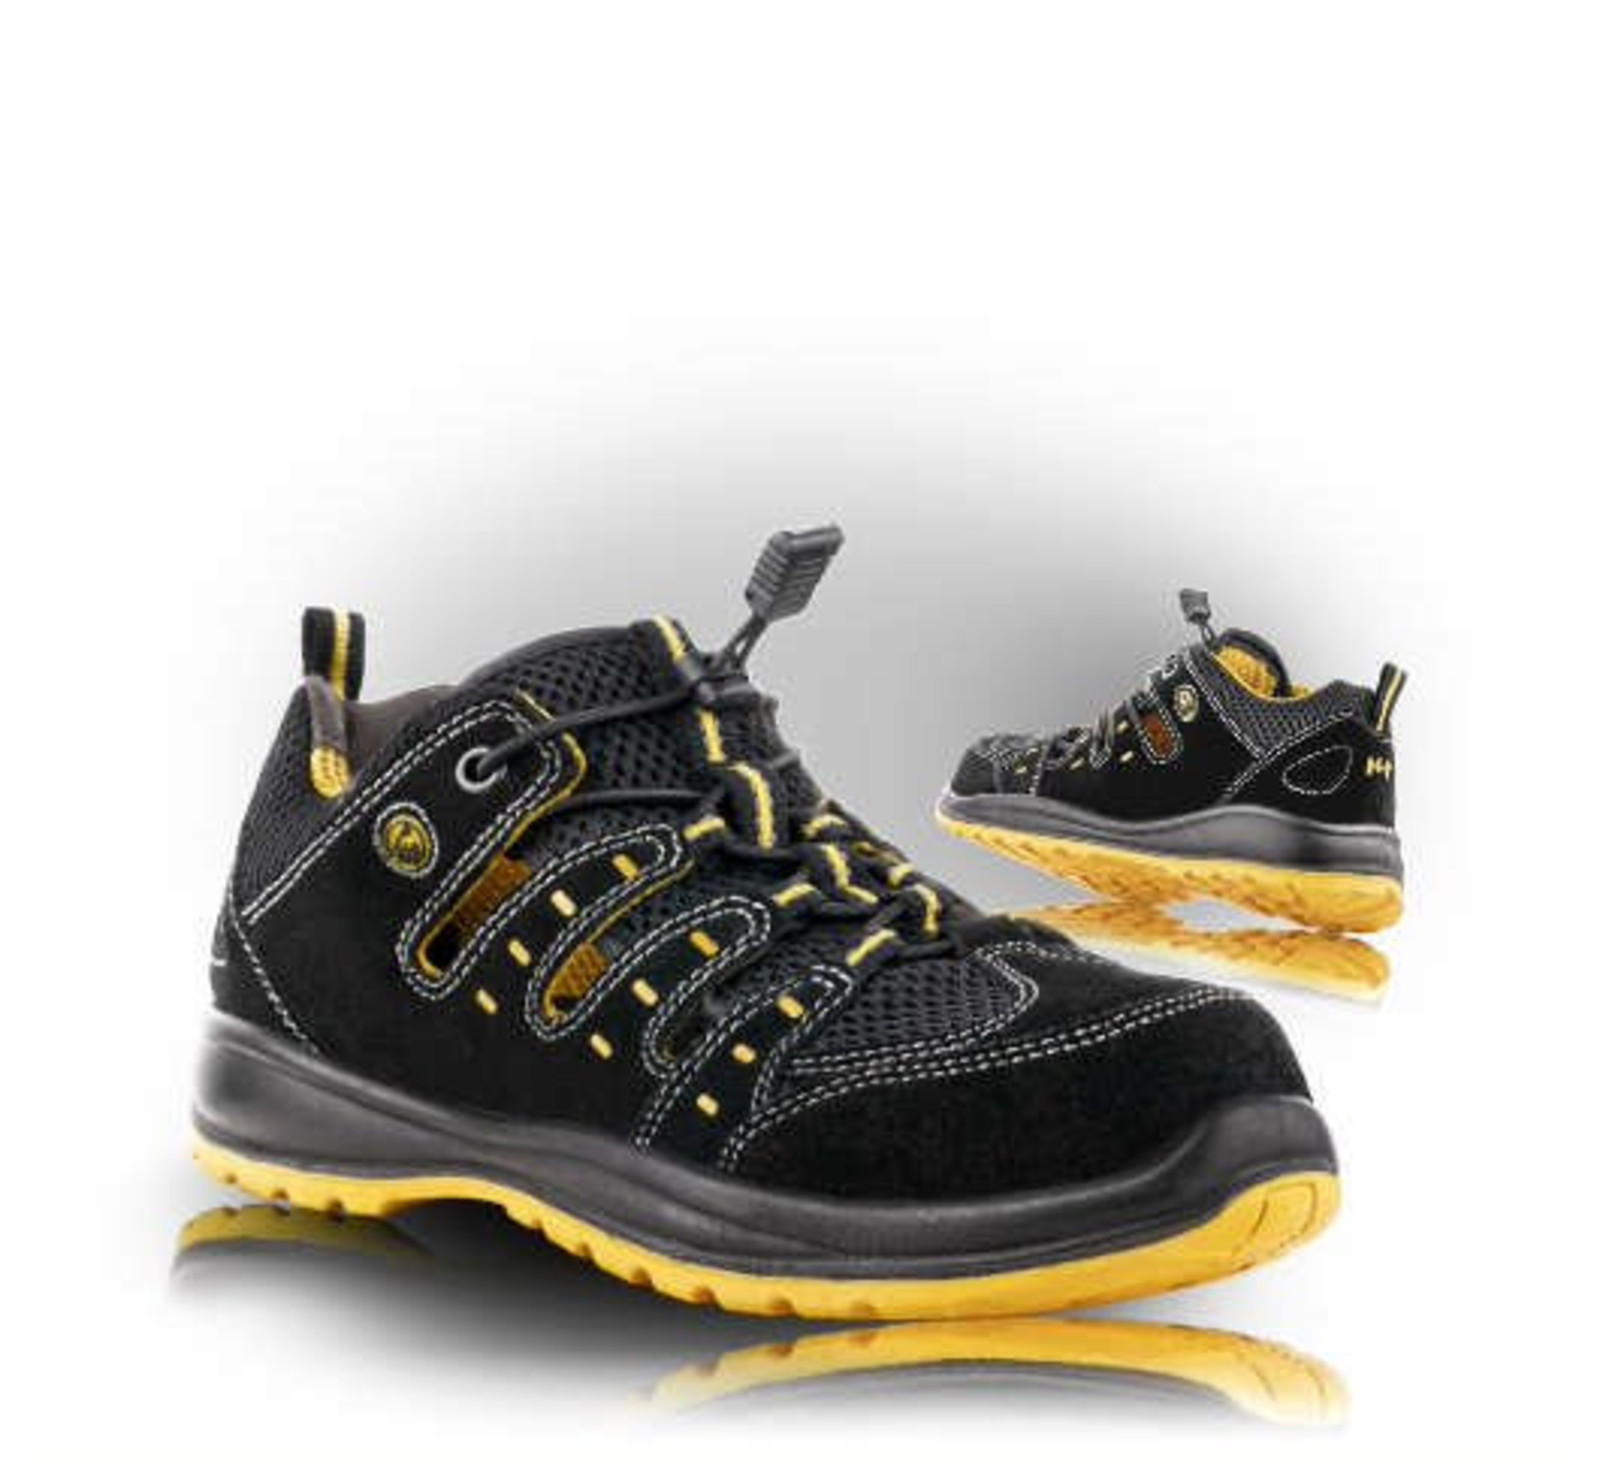 Bezpečnostné sandále Memphis S1 ESD - veľkosť: 47, farba: čierna/žltá